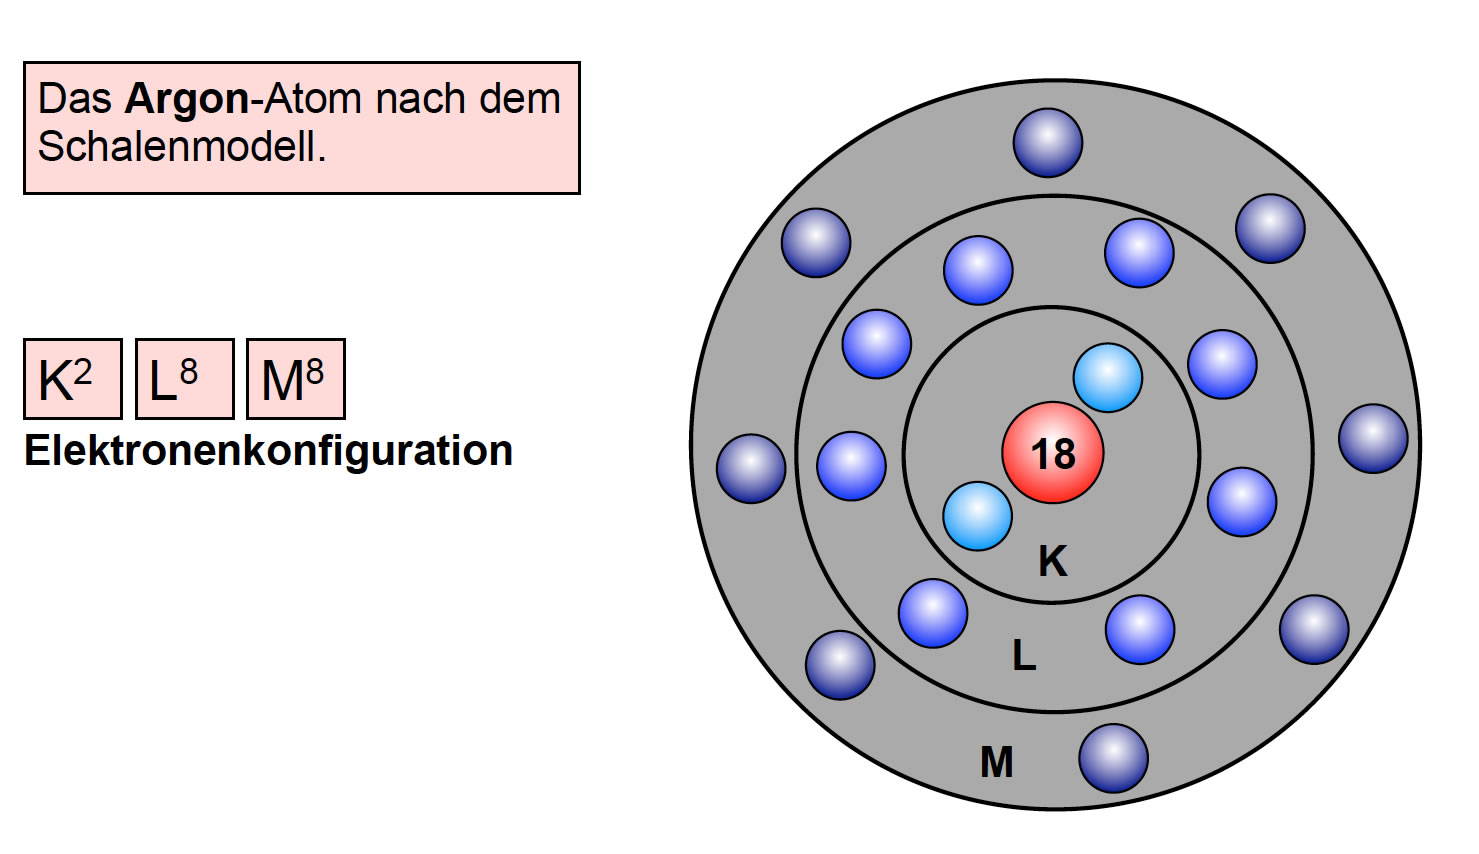 Строение атома алюминия (al), схема и примеры